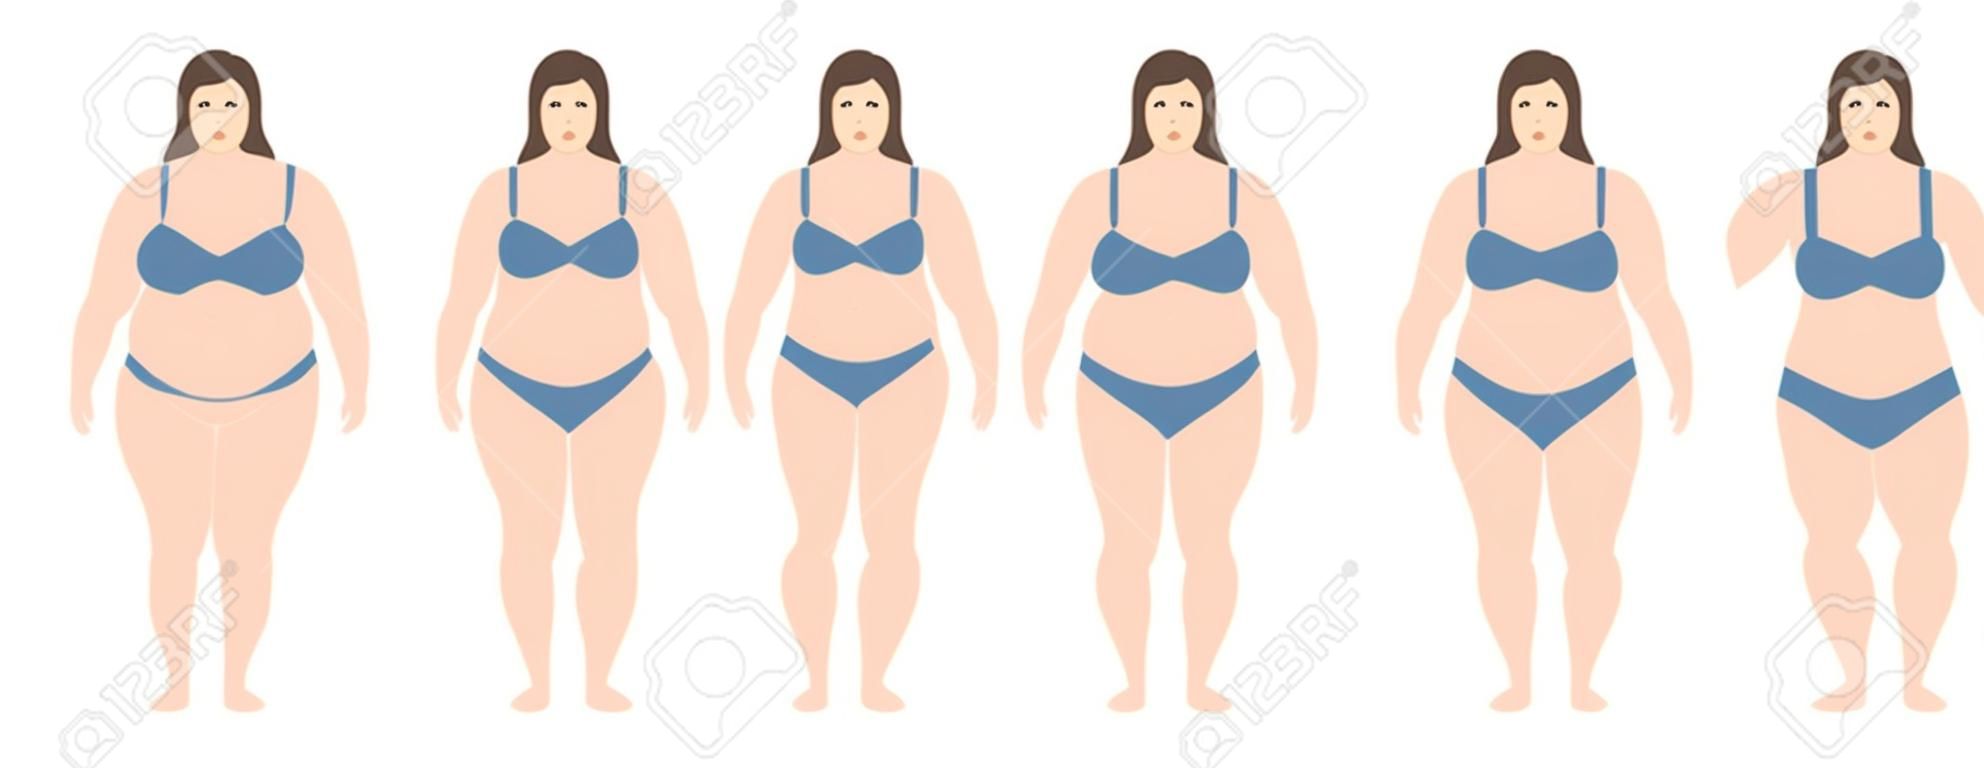 거식 증에서 매우 비만에 다른 무게를 가진 여자의 벡터 일러스트. 체질량 지수, 체중 감량 개념.